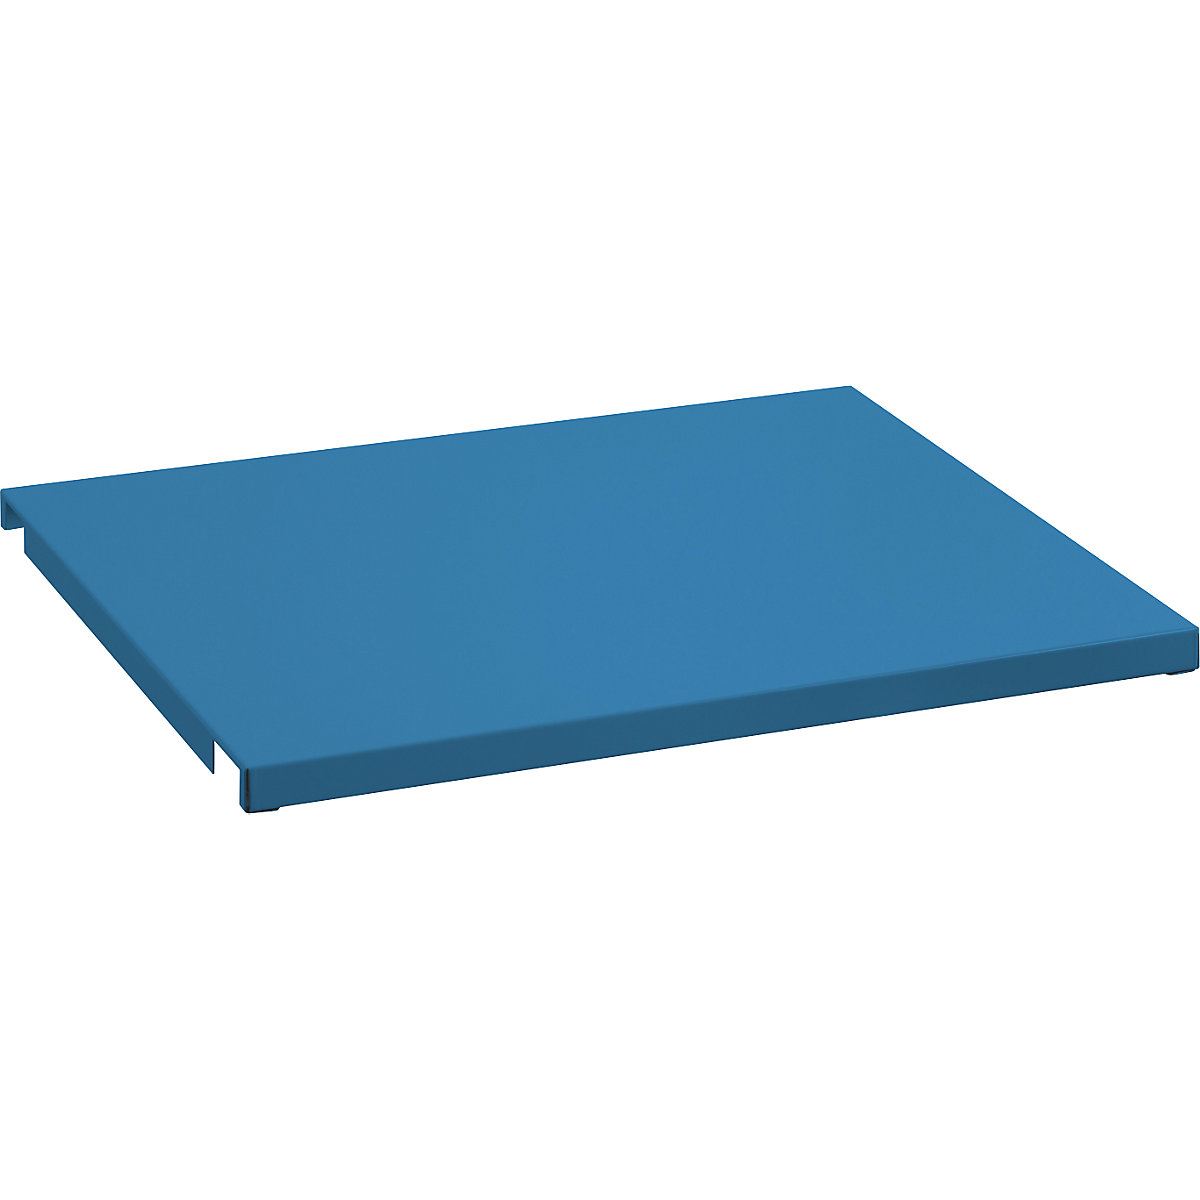 Recouvrement en tôle pour cadre de tablette – LISTA, pour l x p 1290 x 860 mm, bleu clair-2